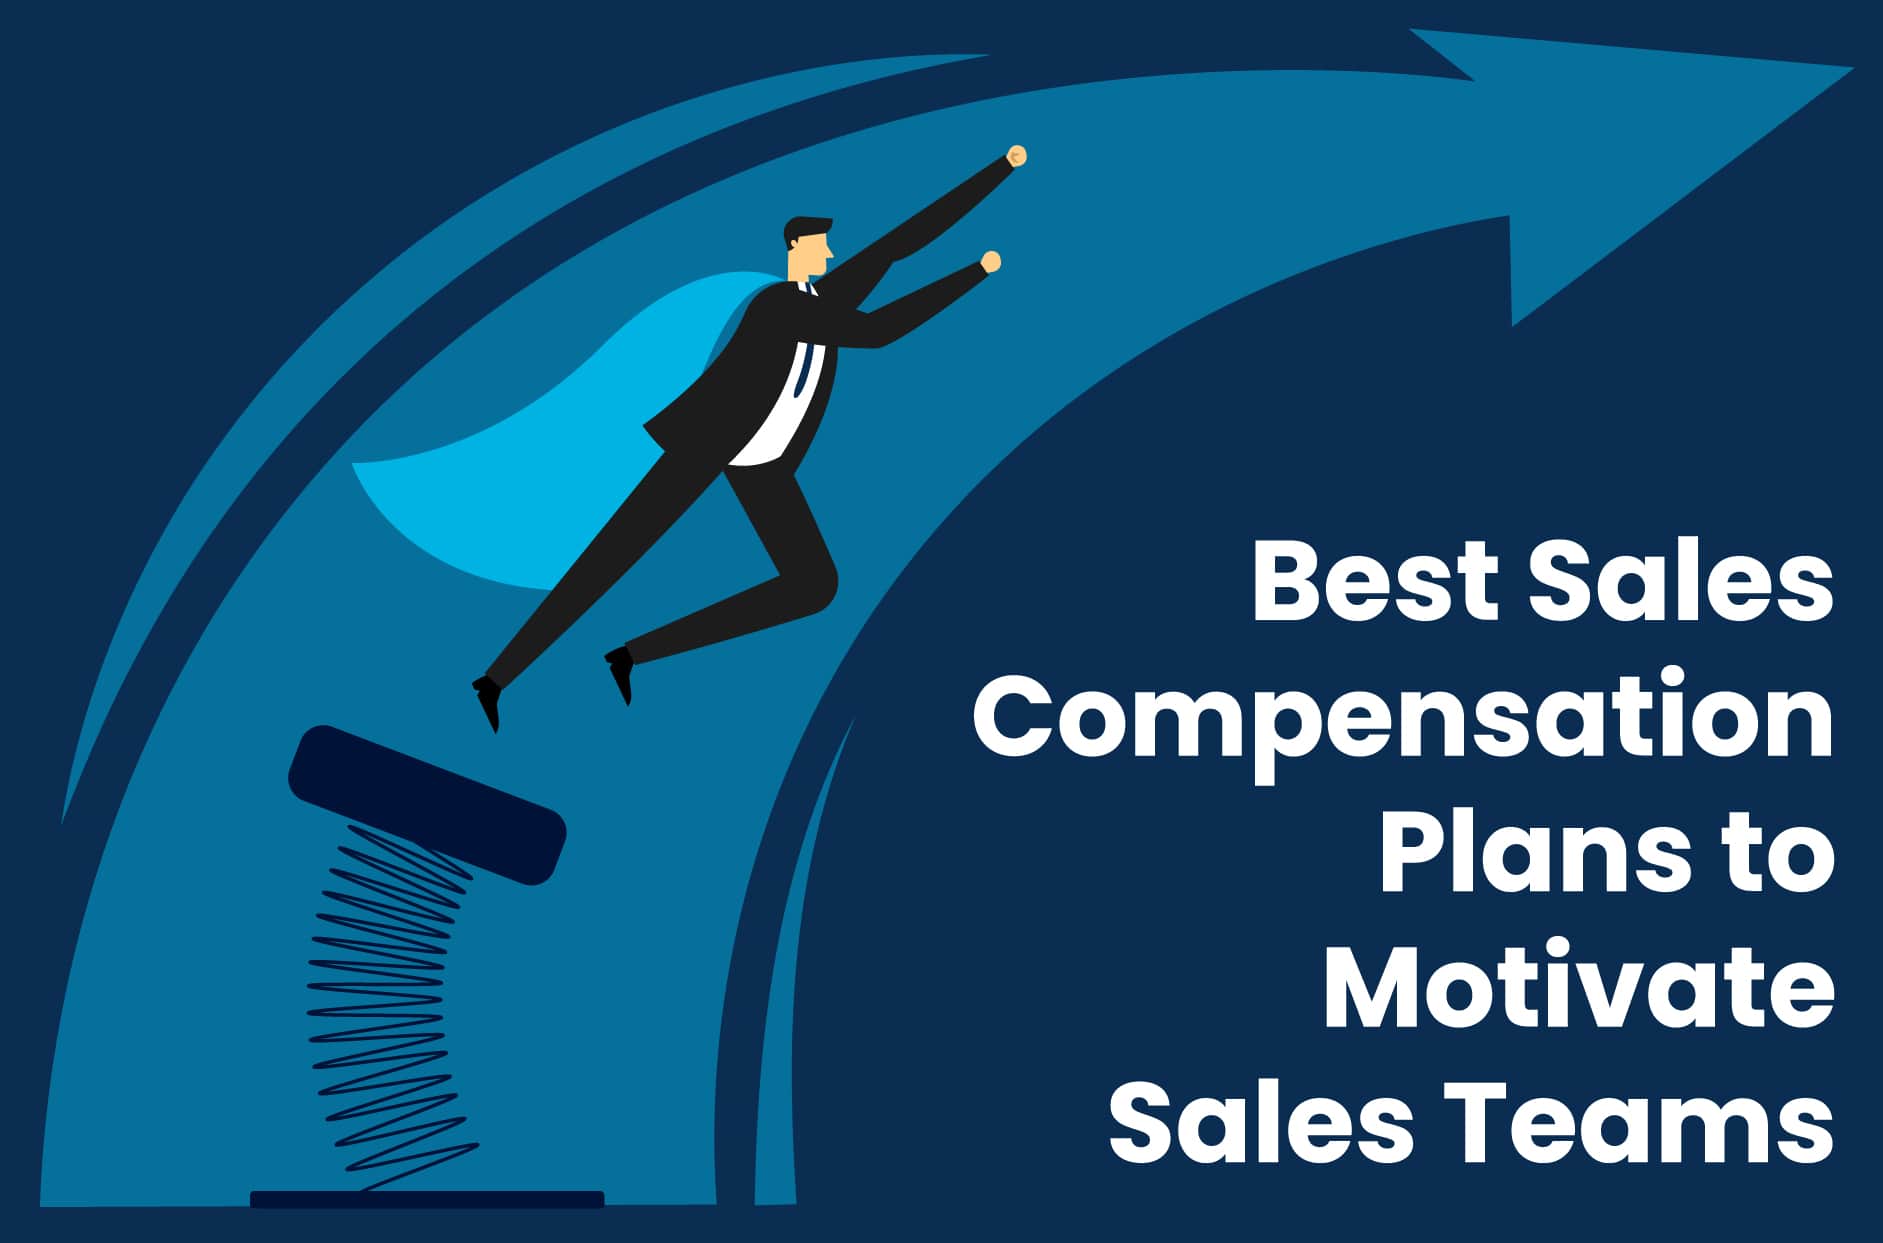 Best Sales Compensation Plans to Motivate Sales Teams